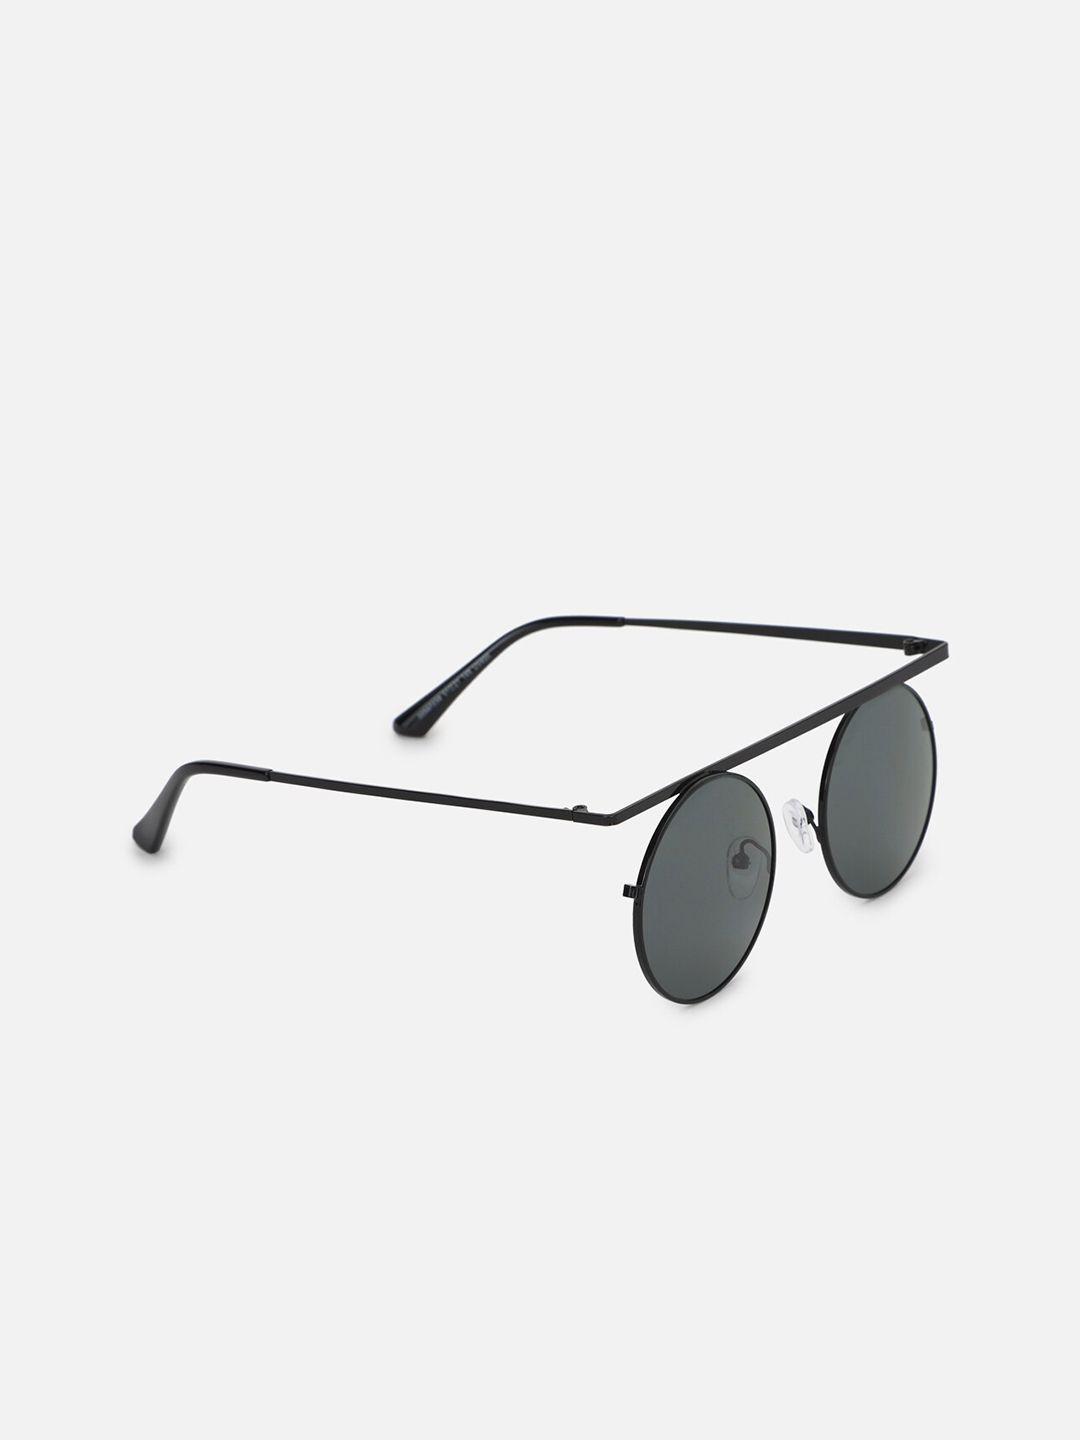 forever-21-women-black-lens-&-round-sunglasses-59723805